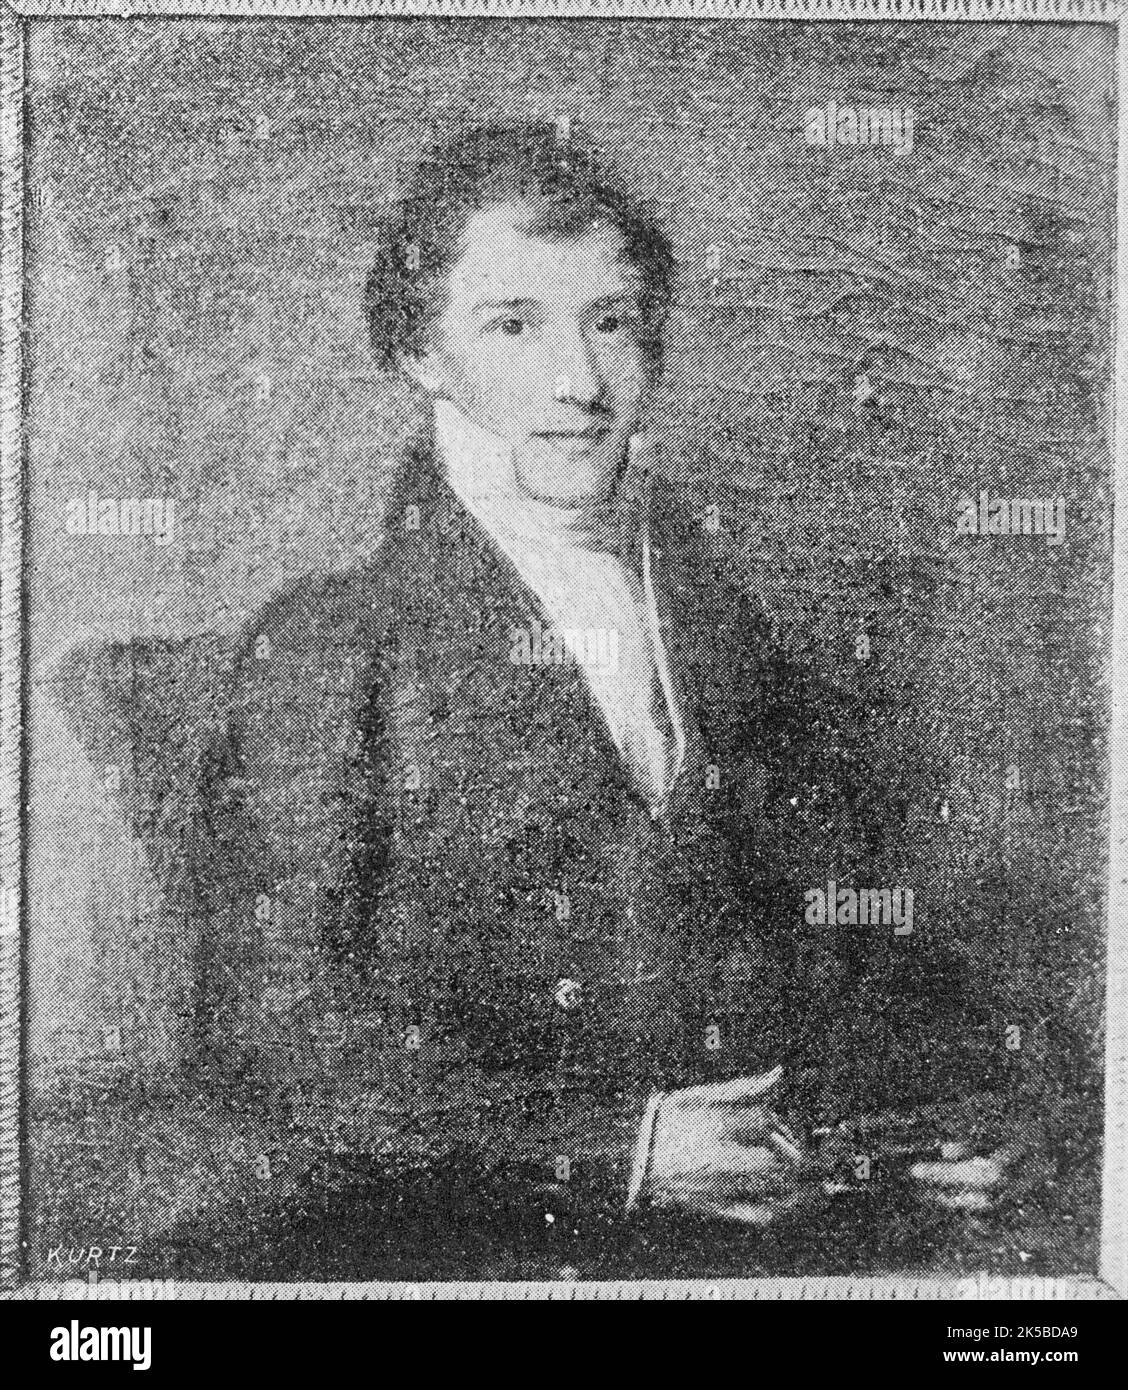 John Adams, 1913. Möglicherweise ein Porträt von John Adams II, dem zweiten Sohn des US-Präsidenten John Quincy Adams. Stockfoto